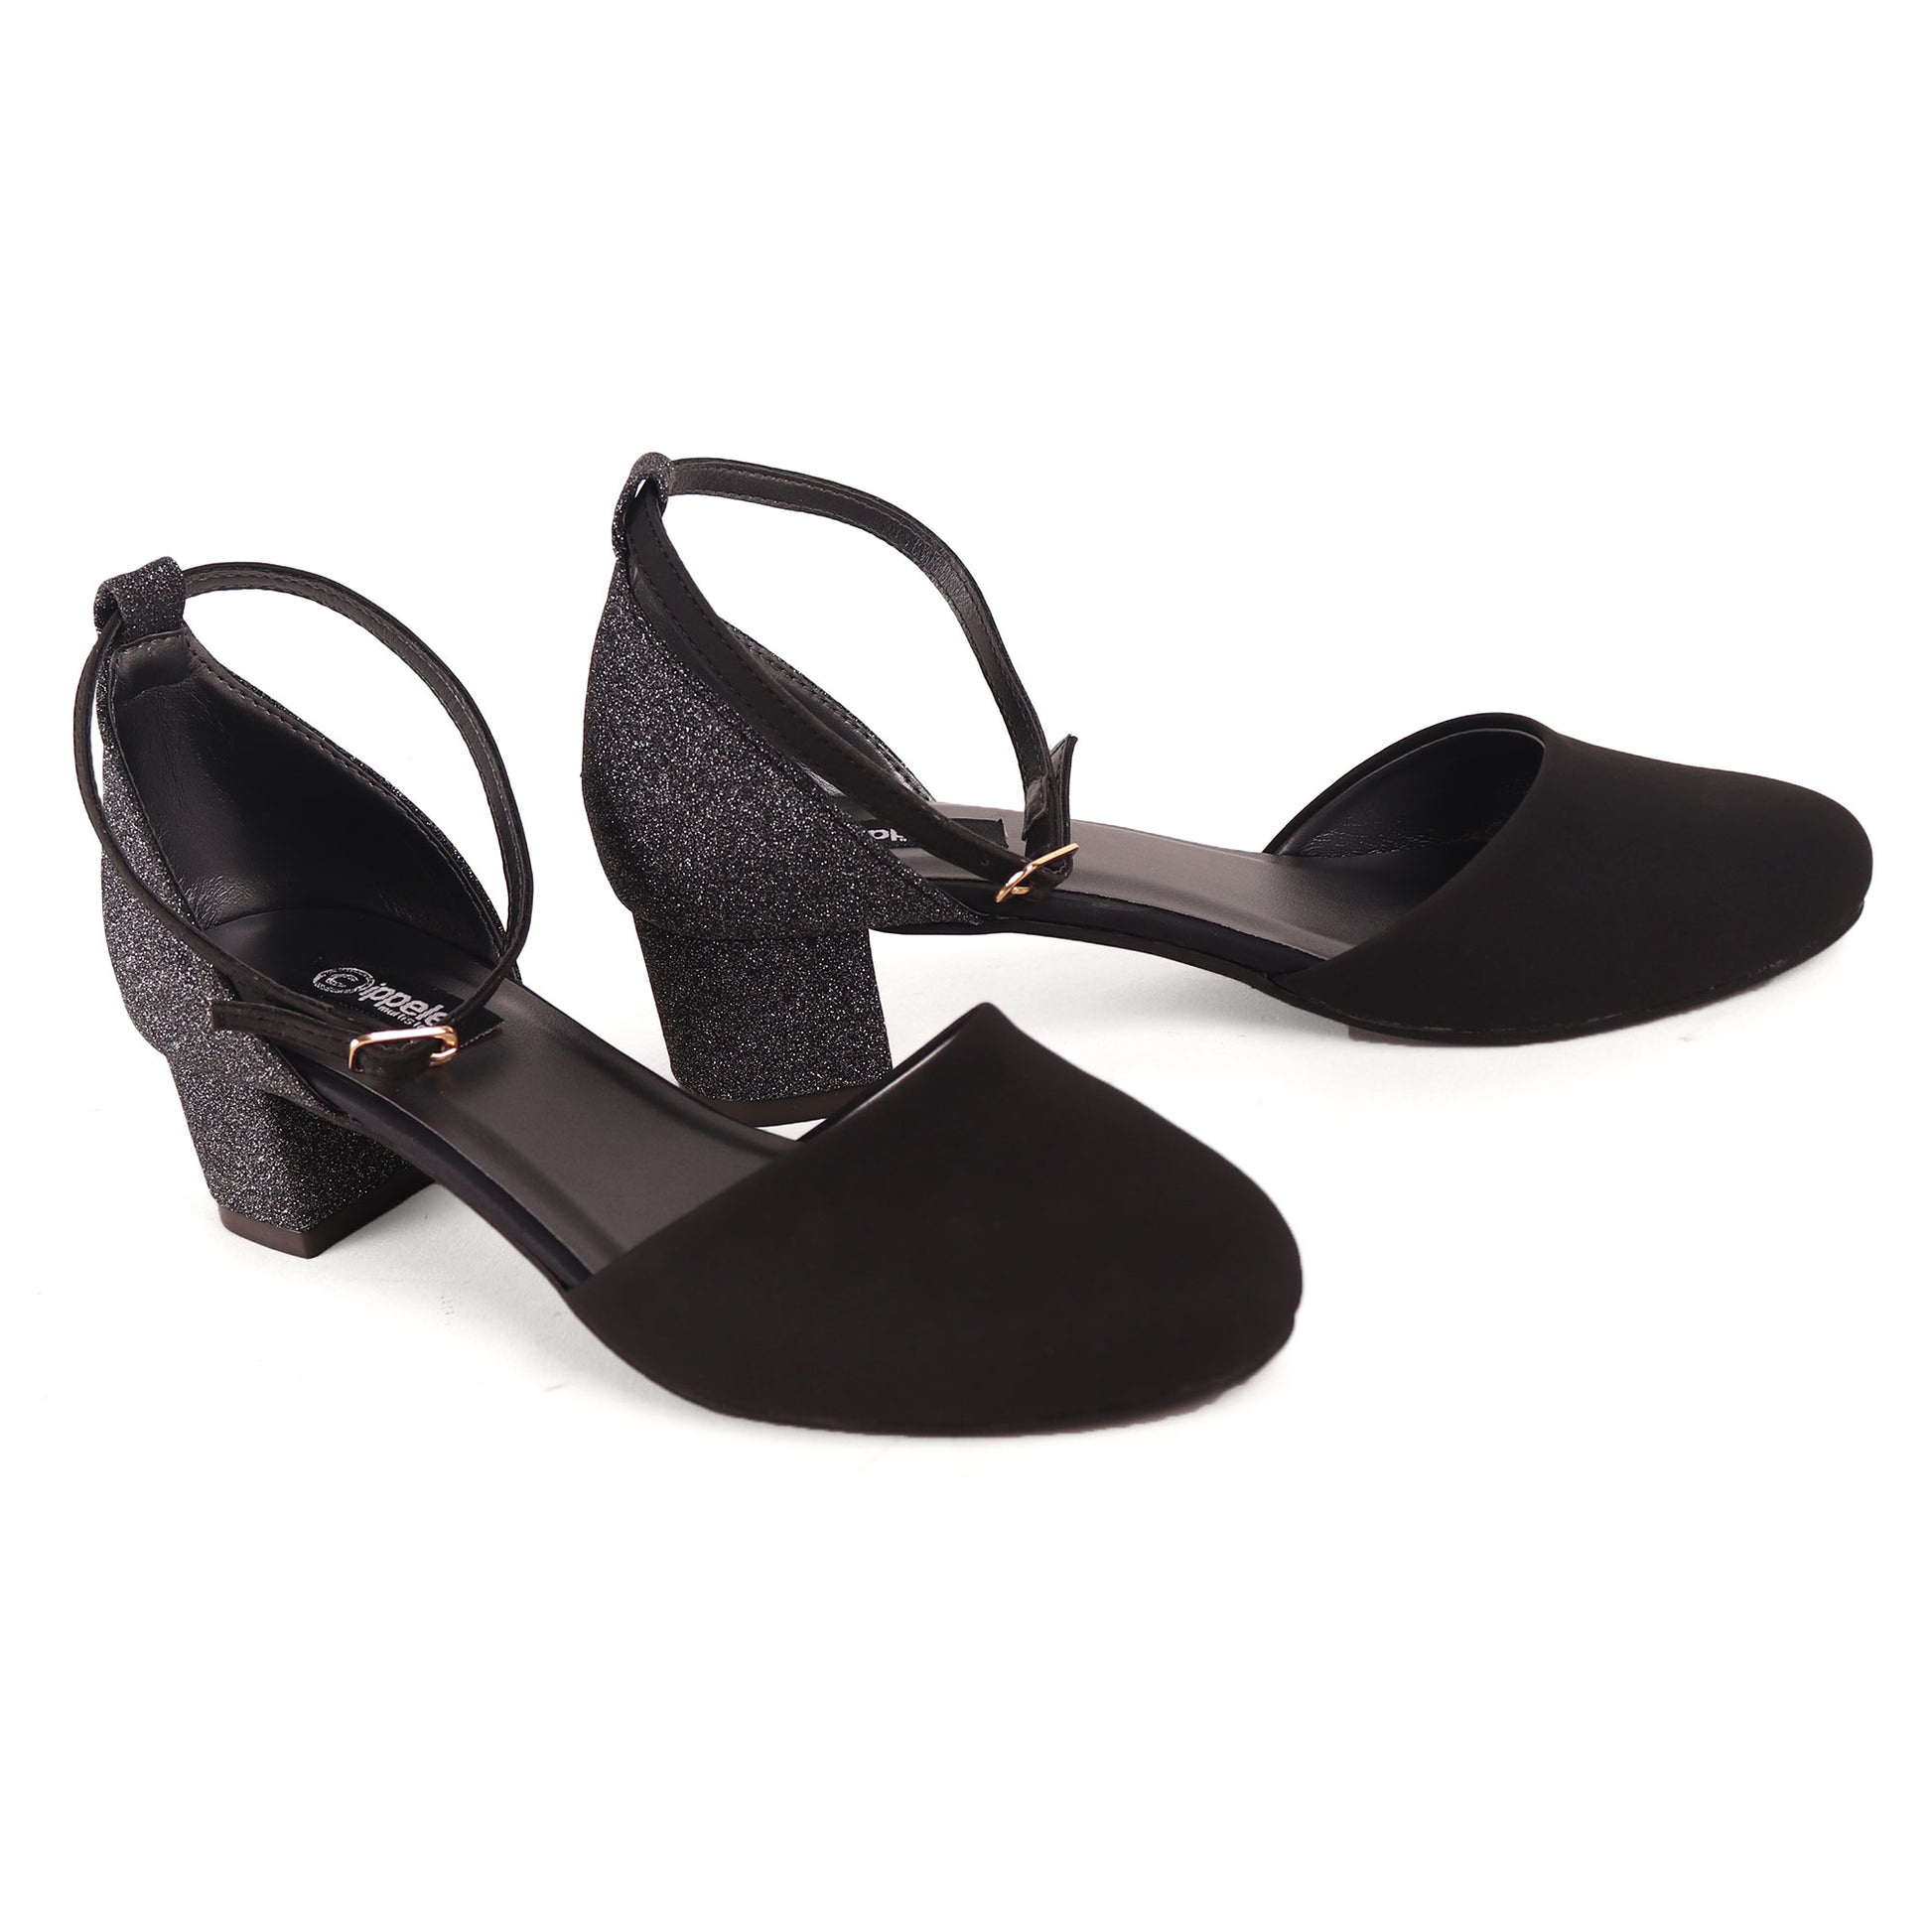 Foot Wear,The Black Glitter Block Heel - Cippele Multi Store